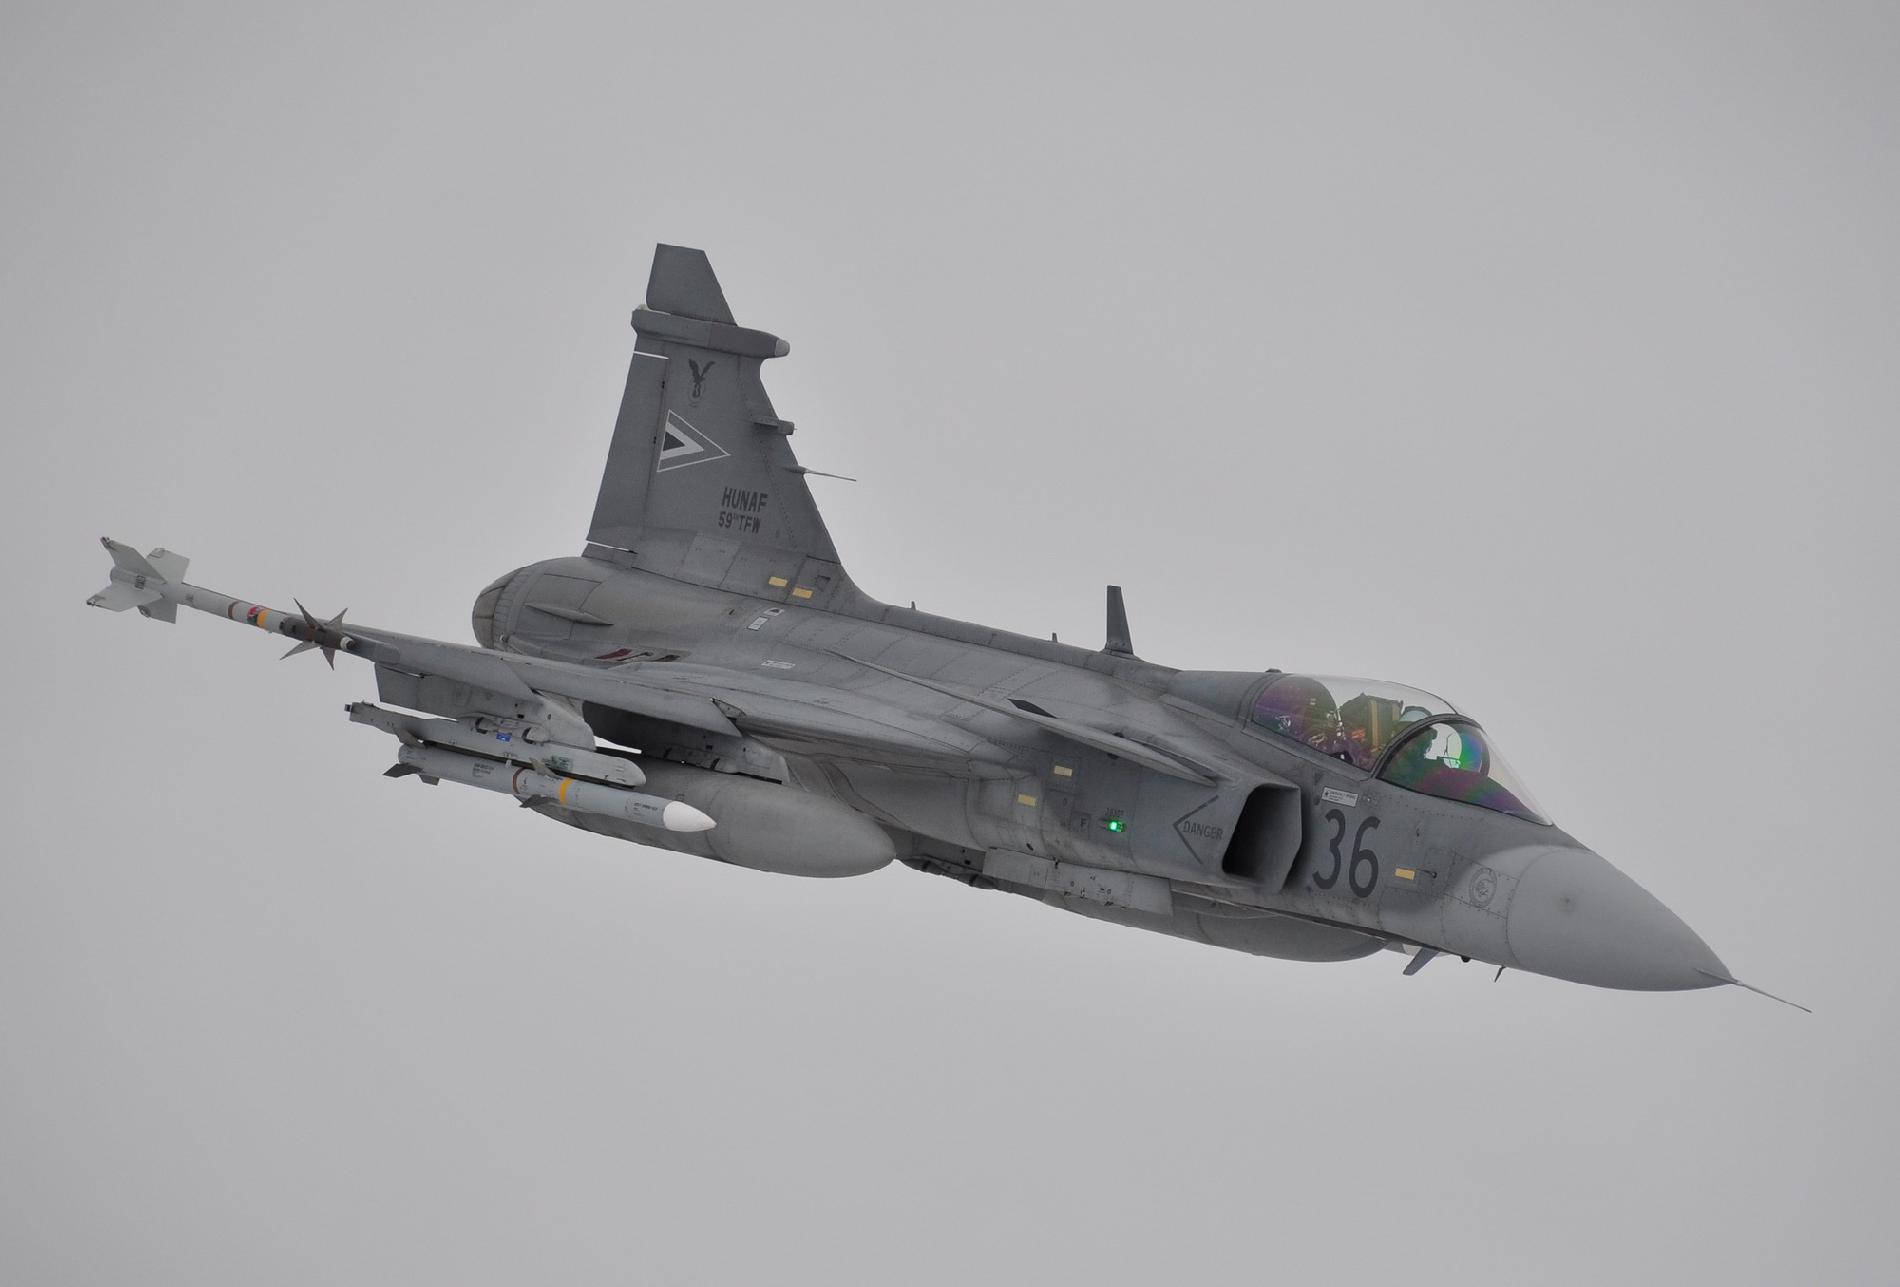 Egy arab repülőgép miatt riasztották a honvédség Gripenjeit